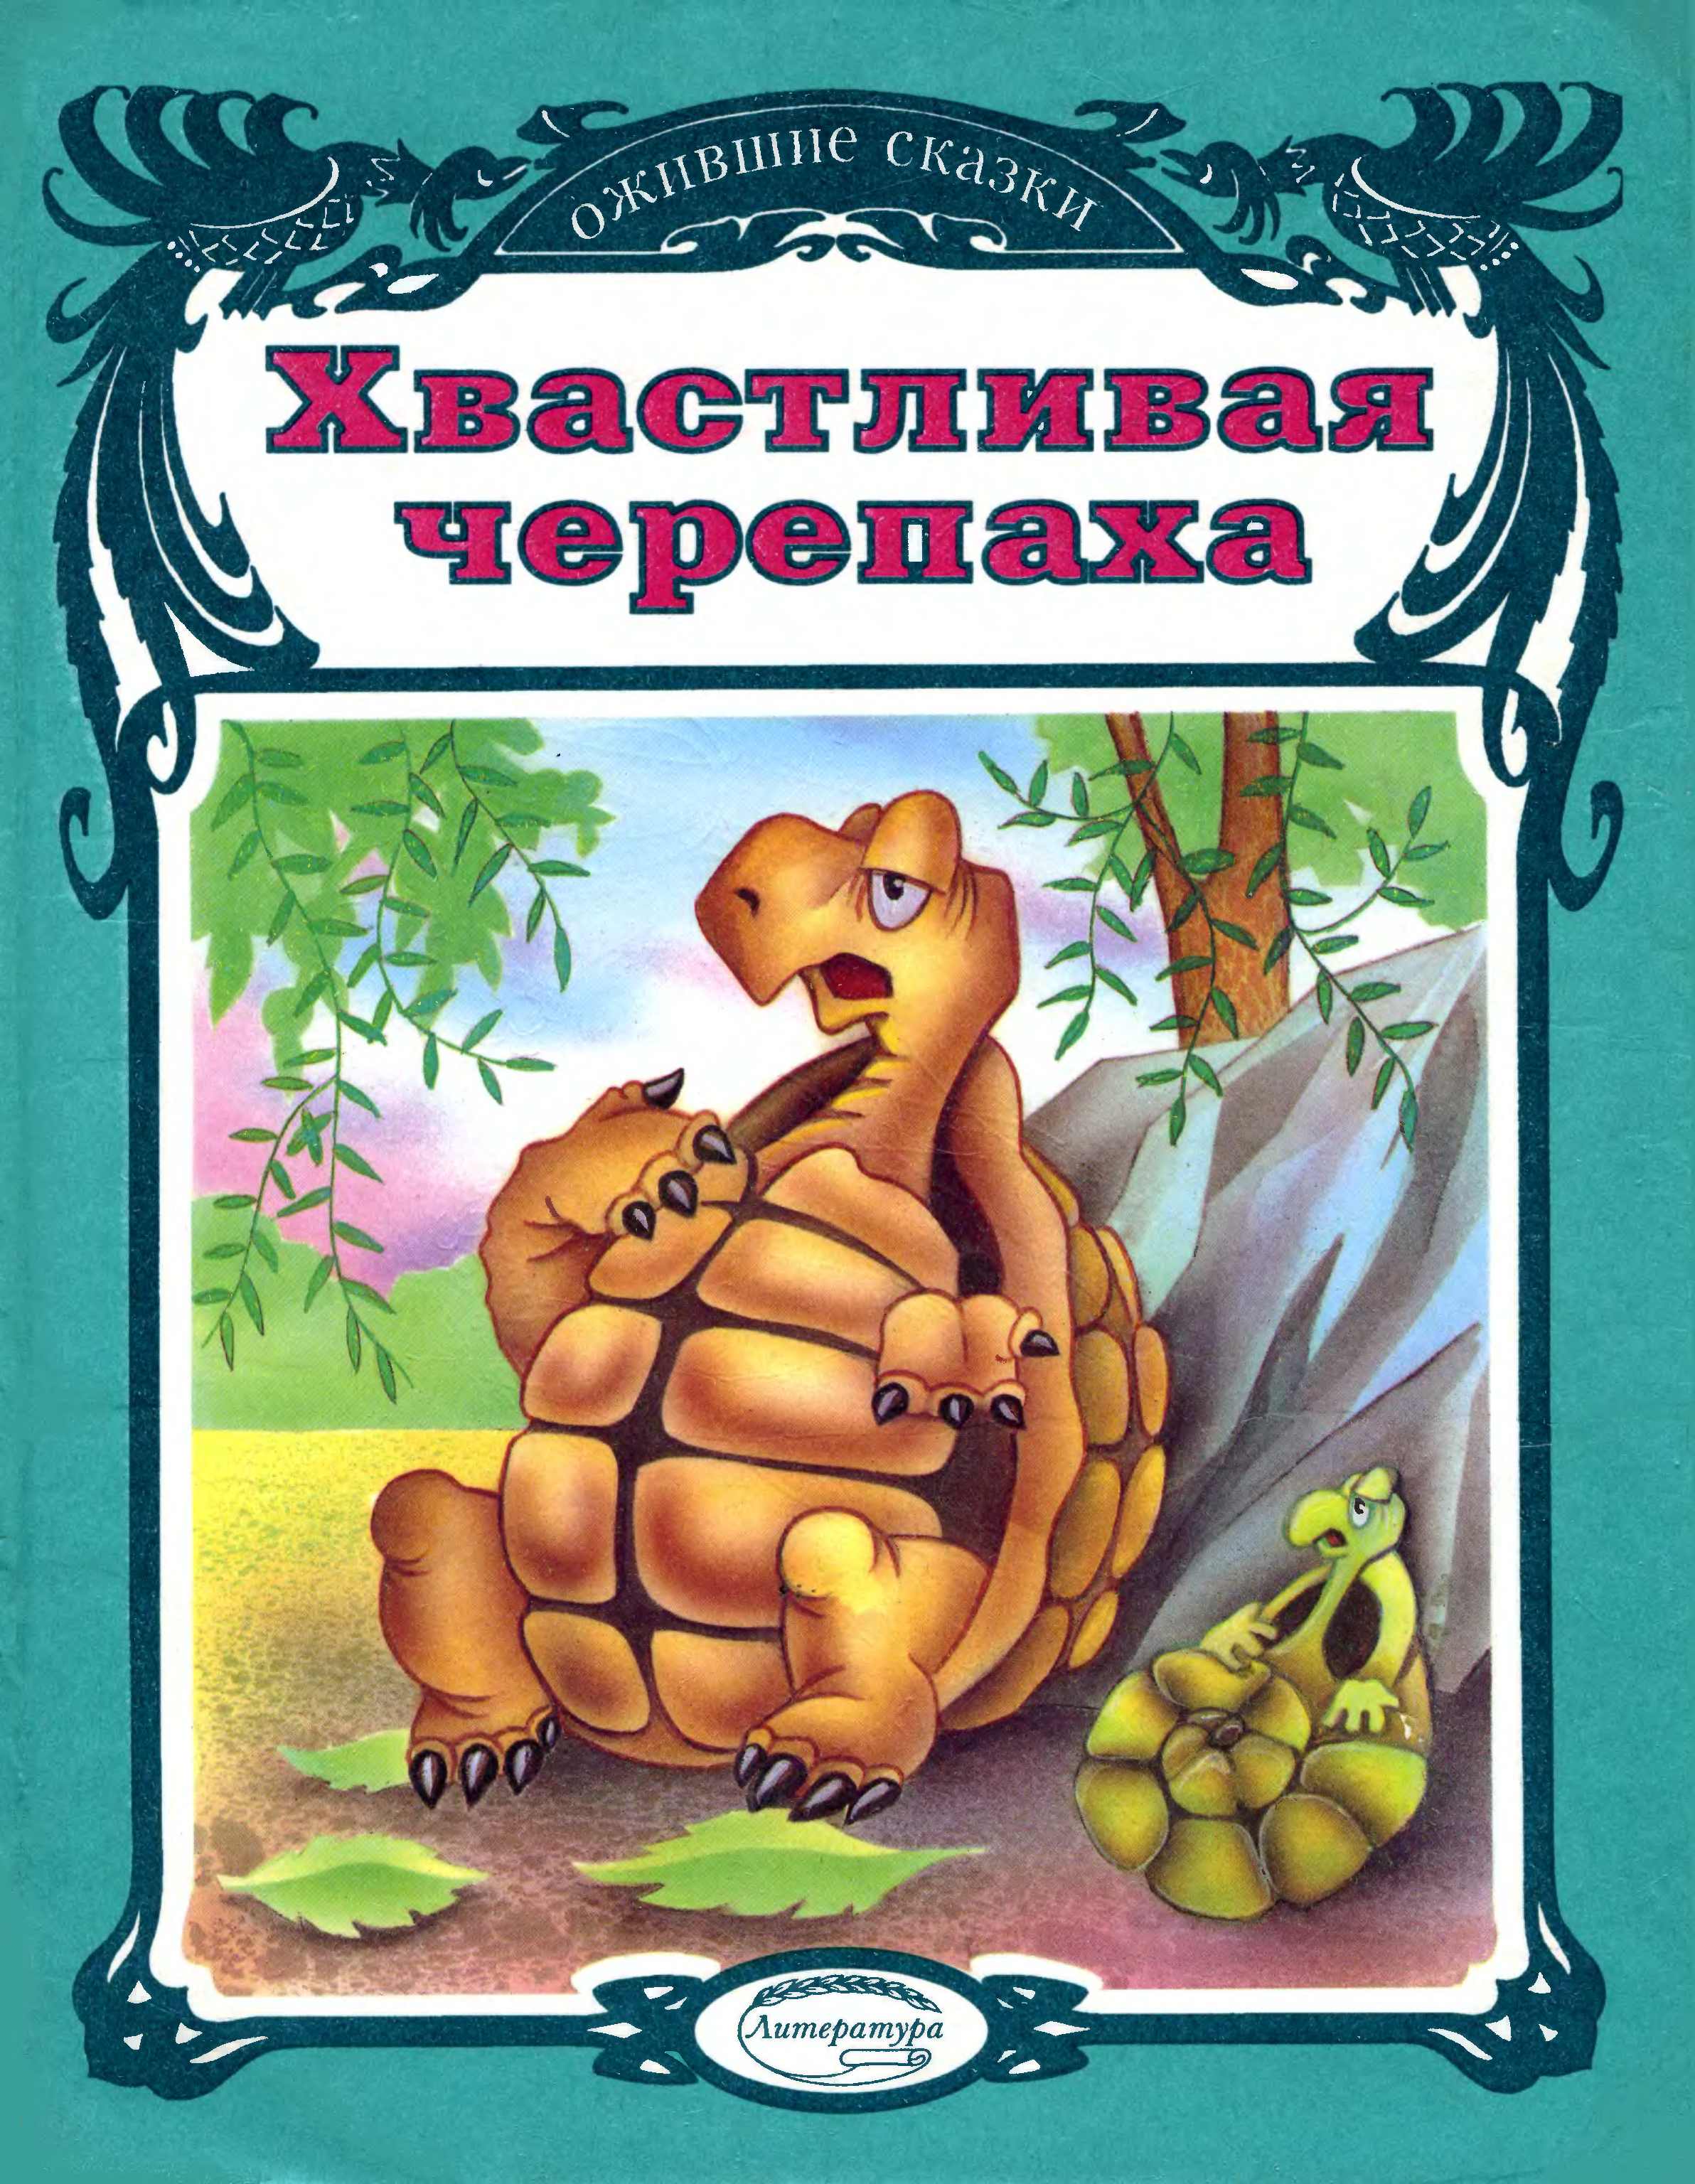 Читать сказку черепаха. Книги о черепахах для детей. Книги про черепах. Книги про черепах для детей. Книжки детские про черепаху.